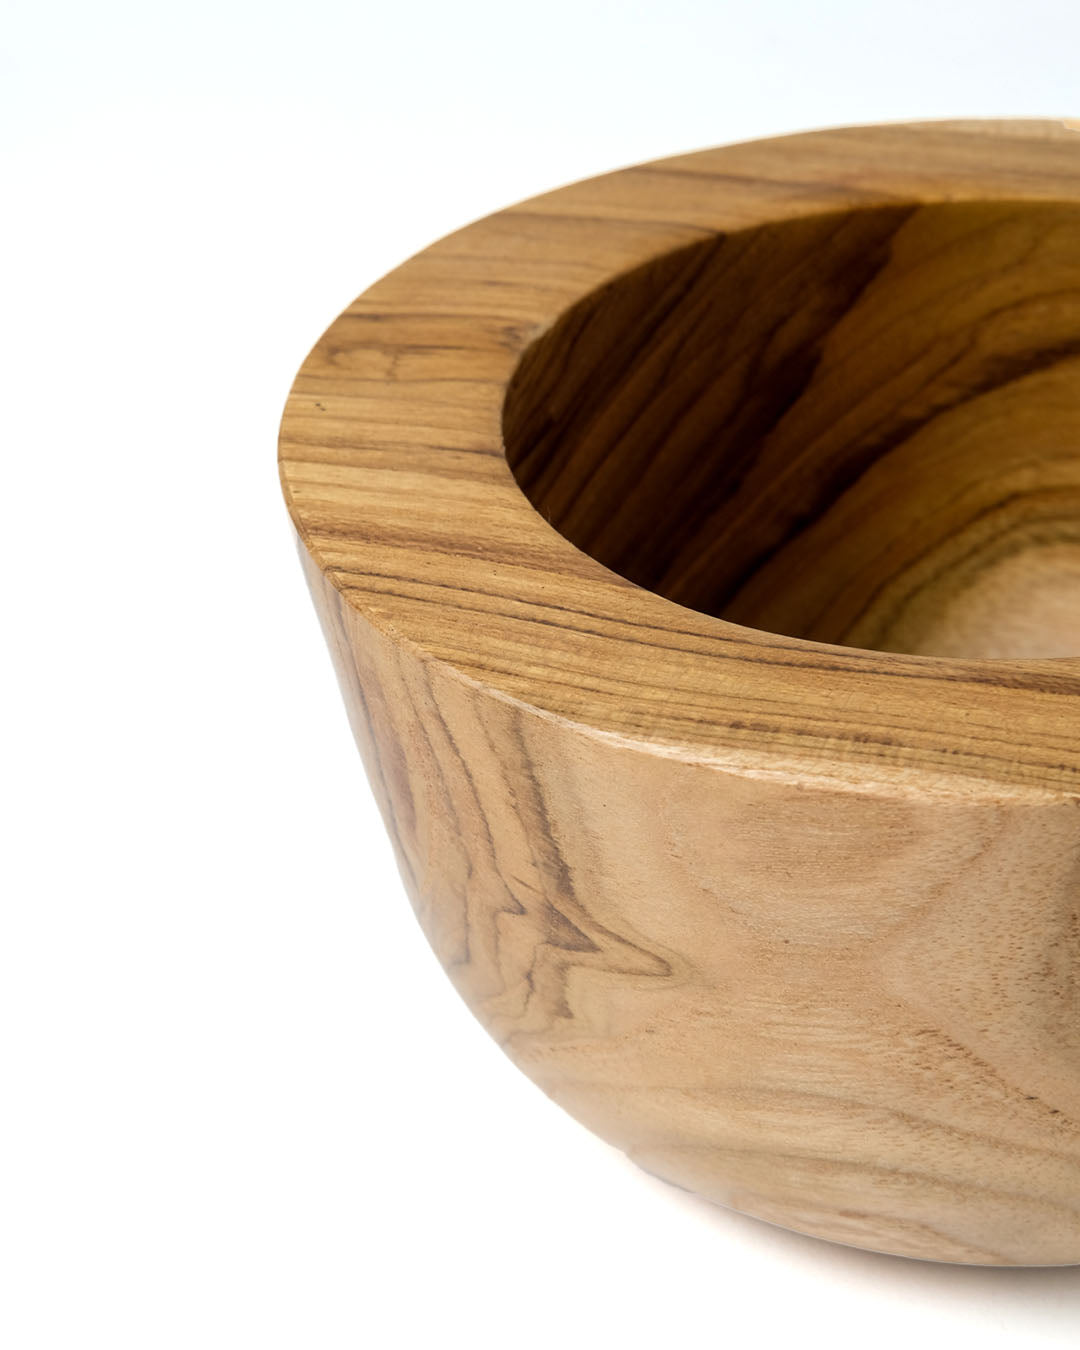 Bowl de madera maciza de teca natural Klaten, redondo, acabado natural, hecho a mano, 15 cm de diámetro, hecho en Indonesia